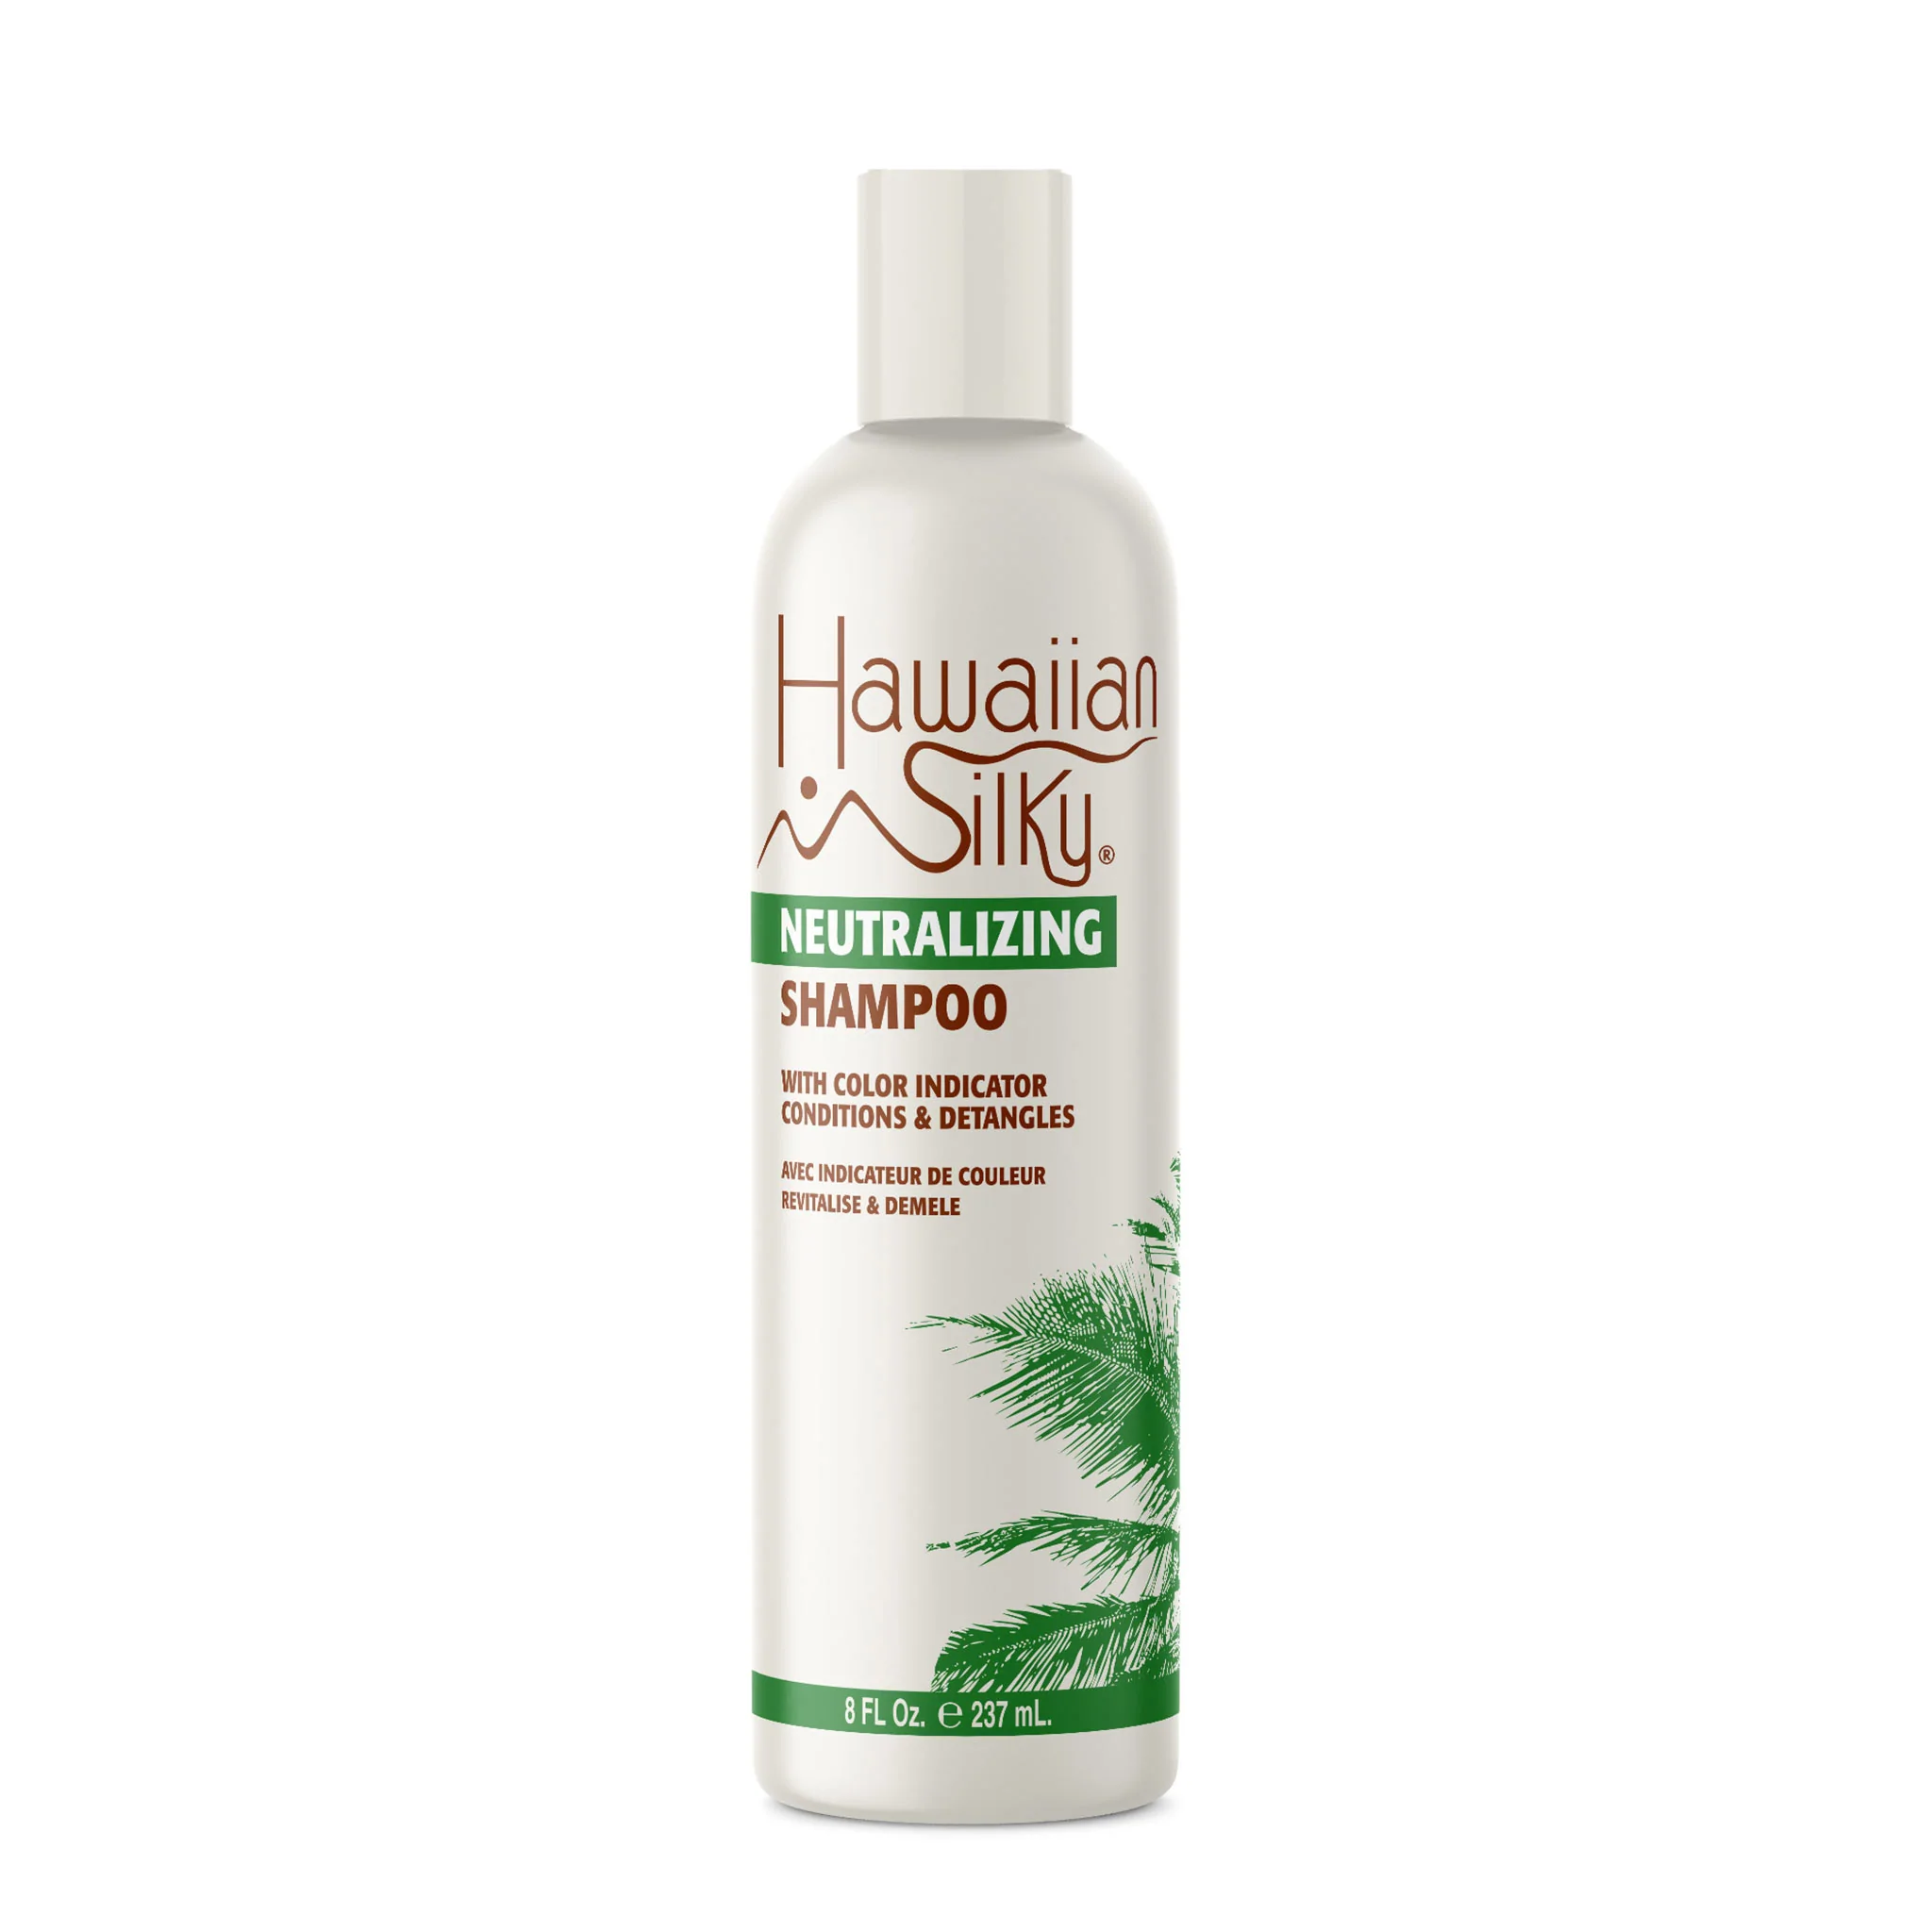 Hawaiian Silky neutralizing shampoo 8oz.